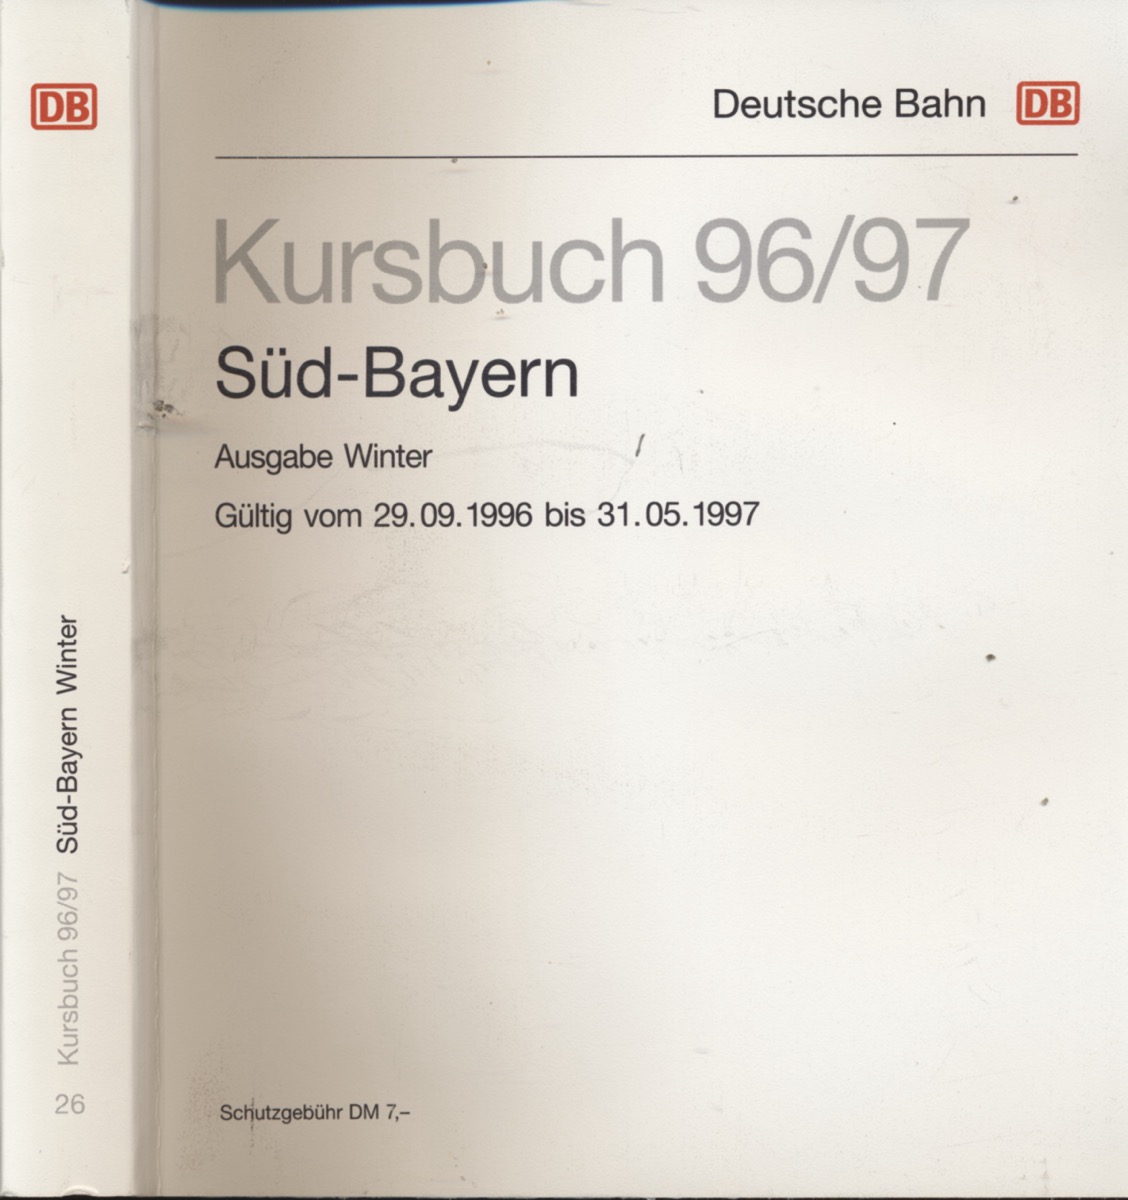 DEUTSCHE BAHN (Hrg.)  Kursbuch Süd-Bayern 1996/97 / Ausgabe Winter, gültig vom 29.09.1996 bis 31.05.1997. 